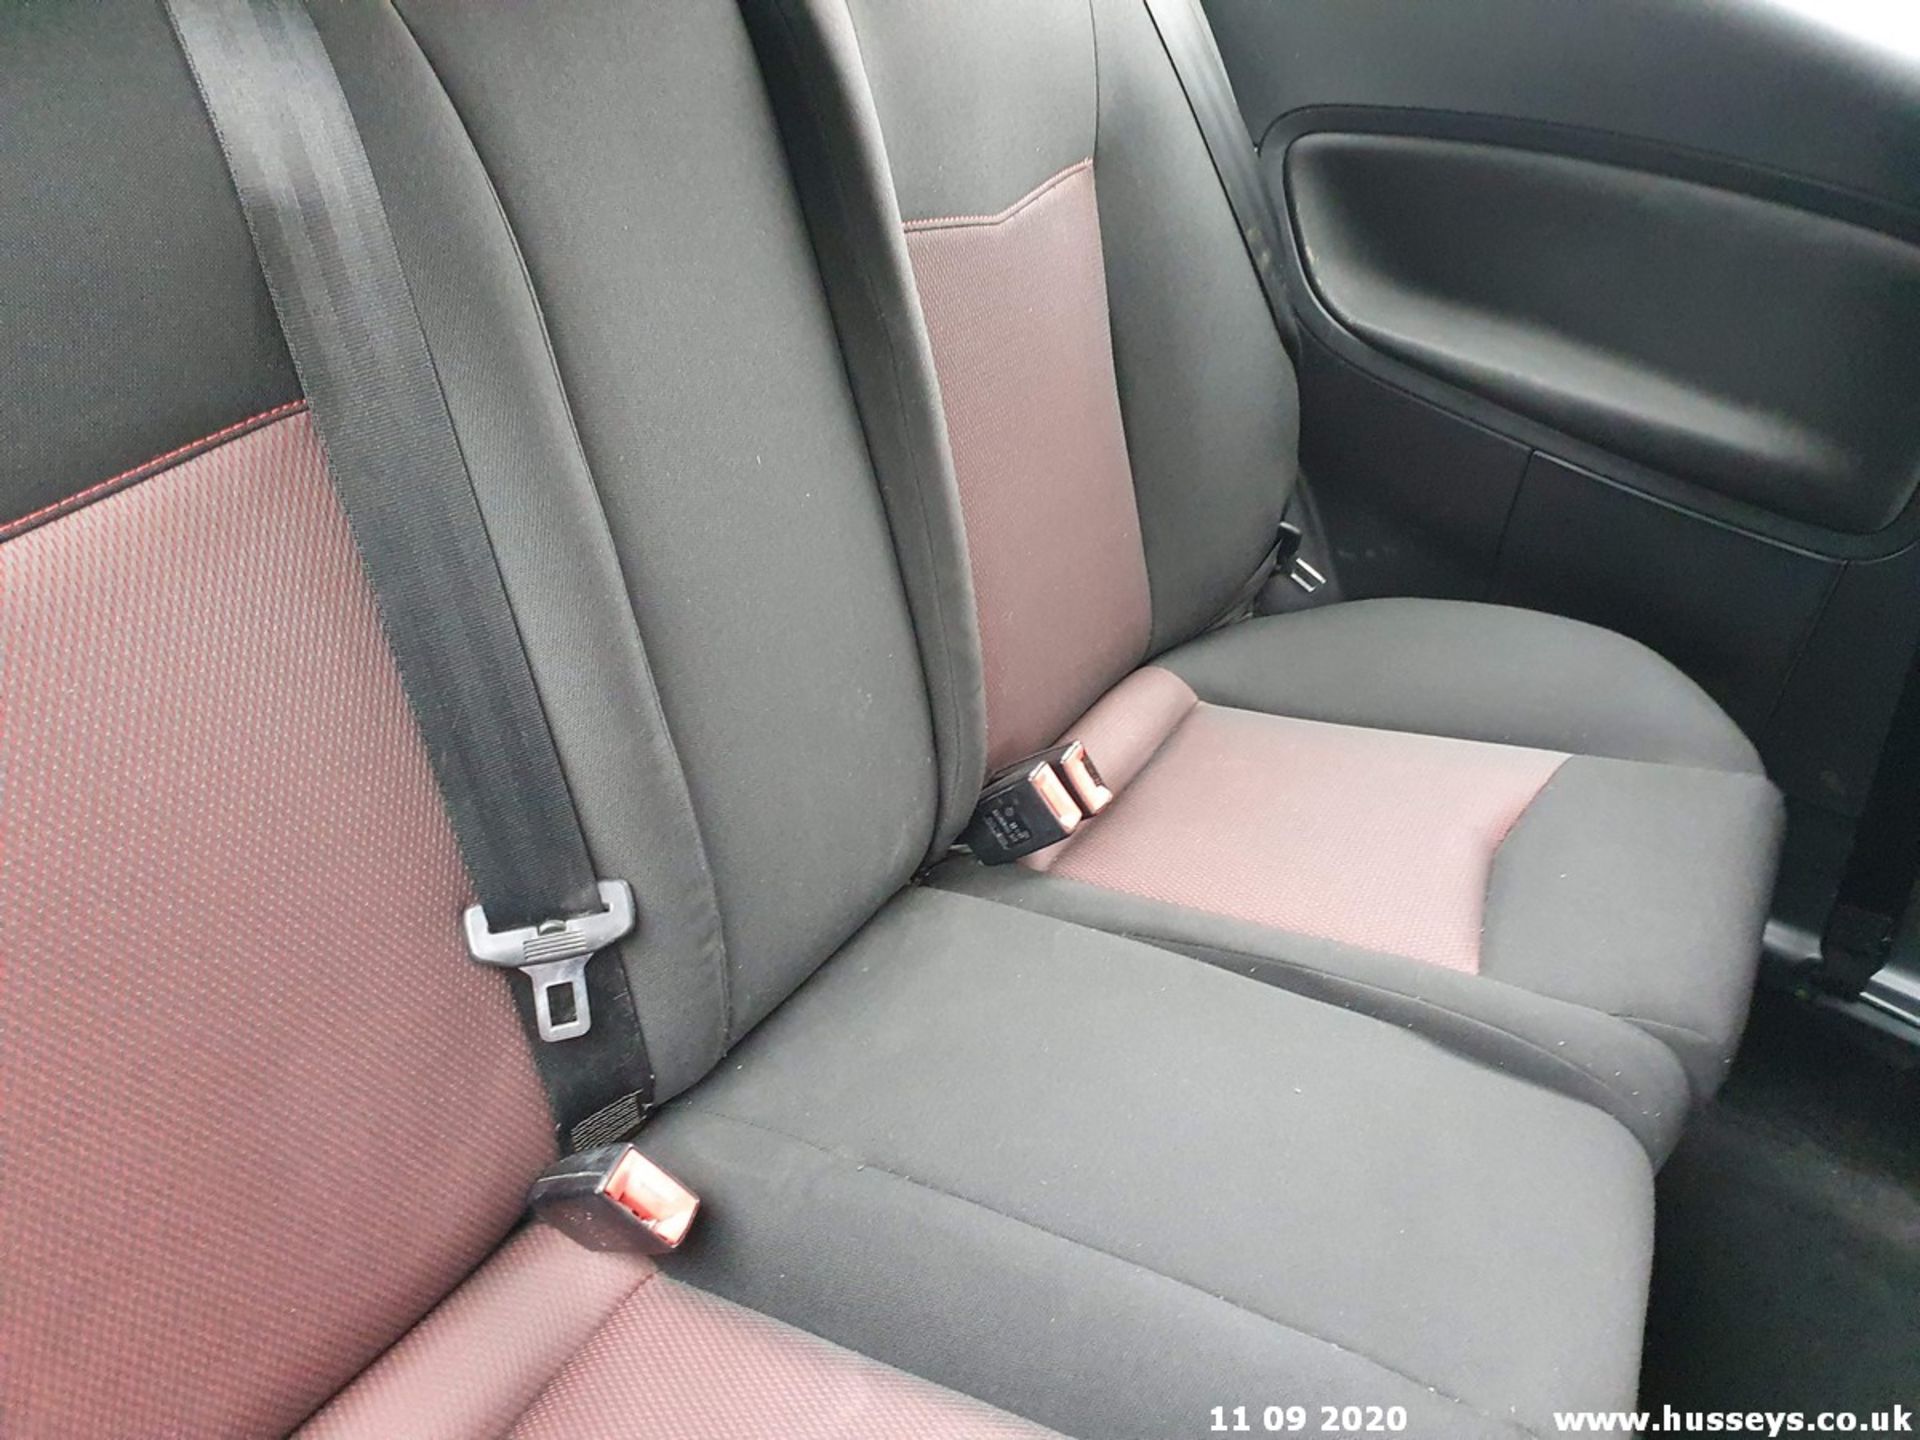 08/57 SEAT IBIZA FORMULA SPORT 100 - 1390cc 3dr Hatchback (Black, 88k) - Image 8 of 9